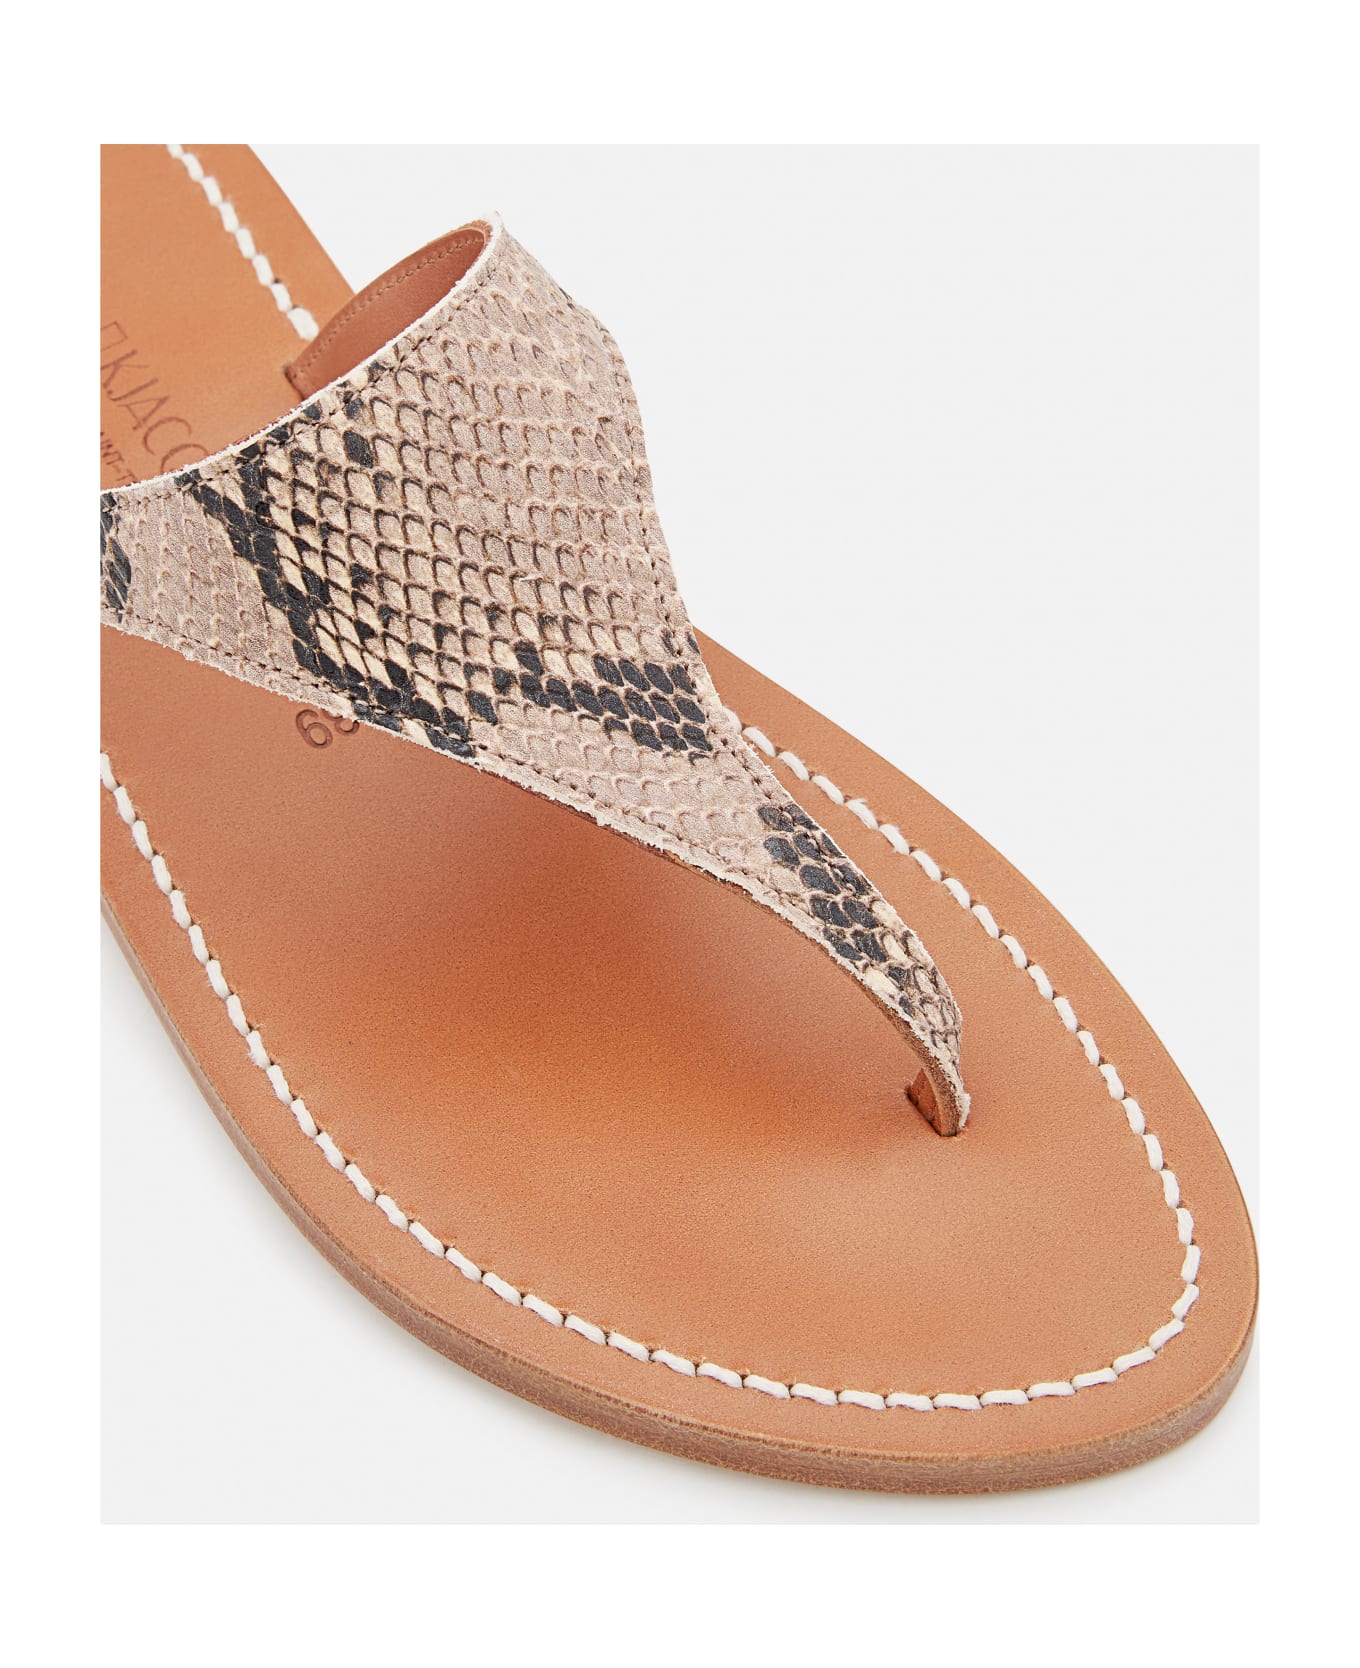 K.Jacques Pegase Leather Sandals - MultiColour サンダル